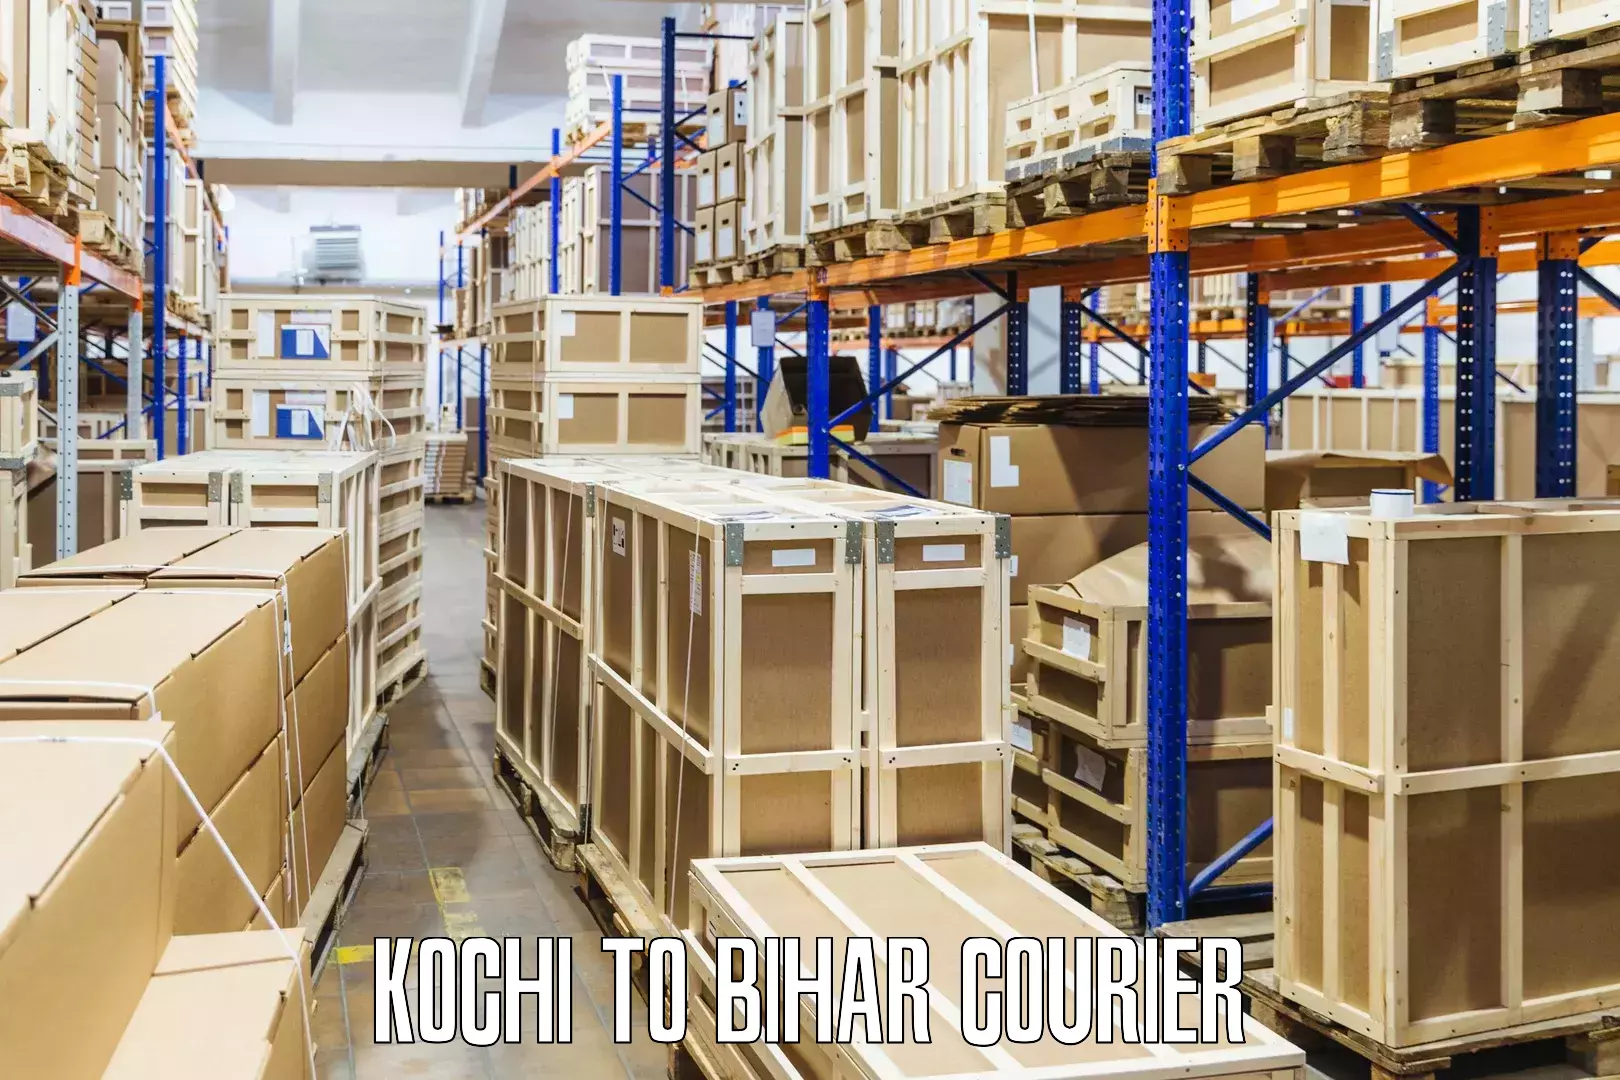 Express courier capabilities Kochi to Bihar